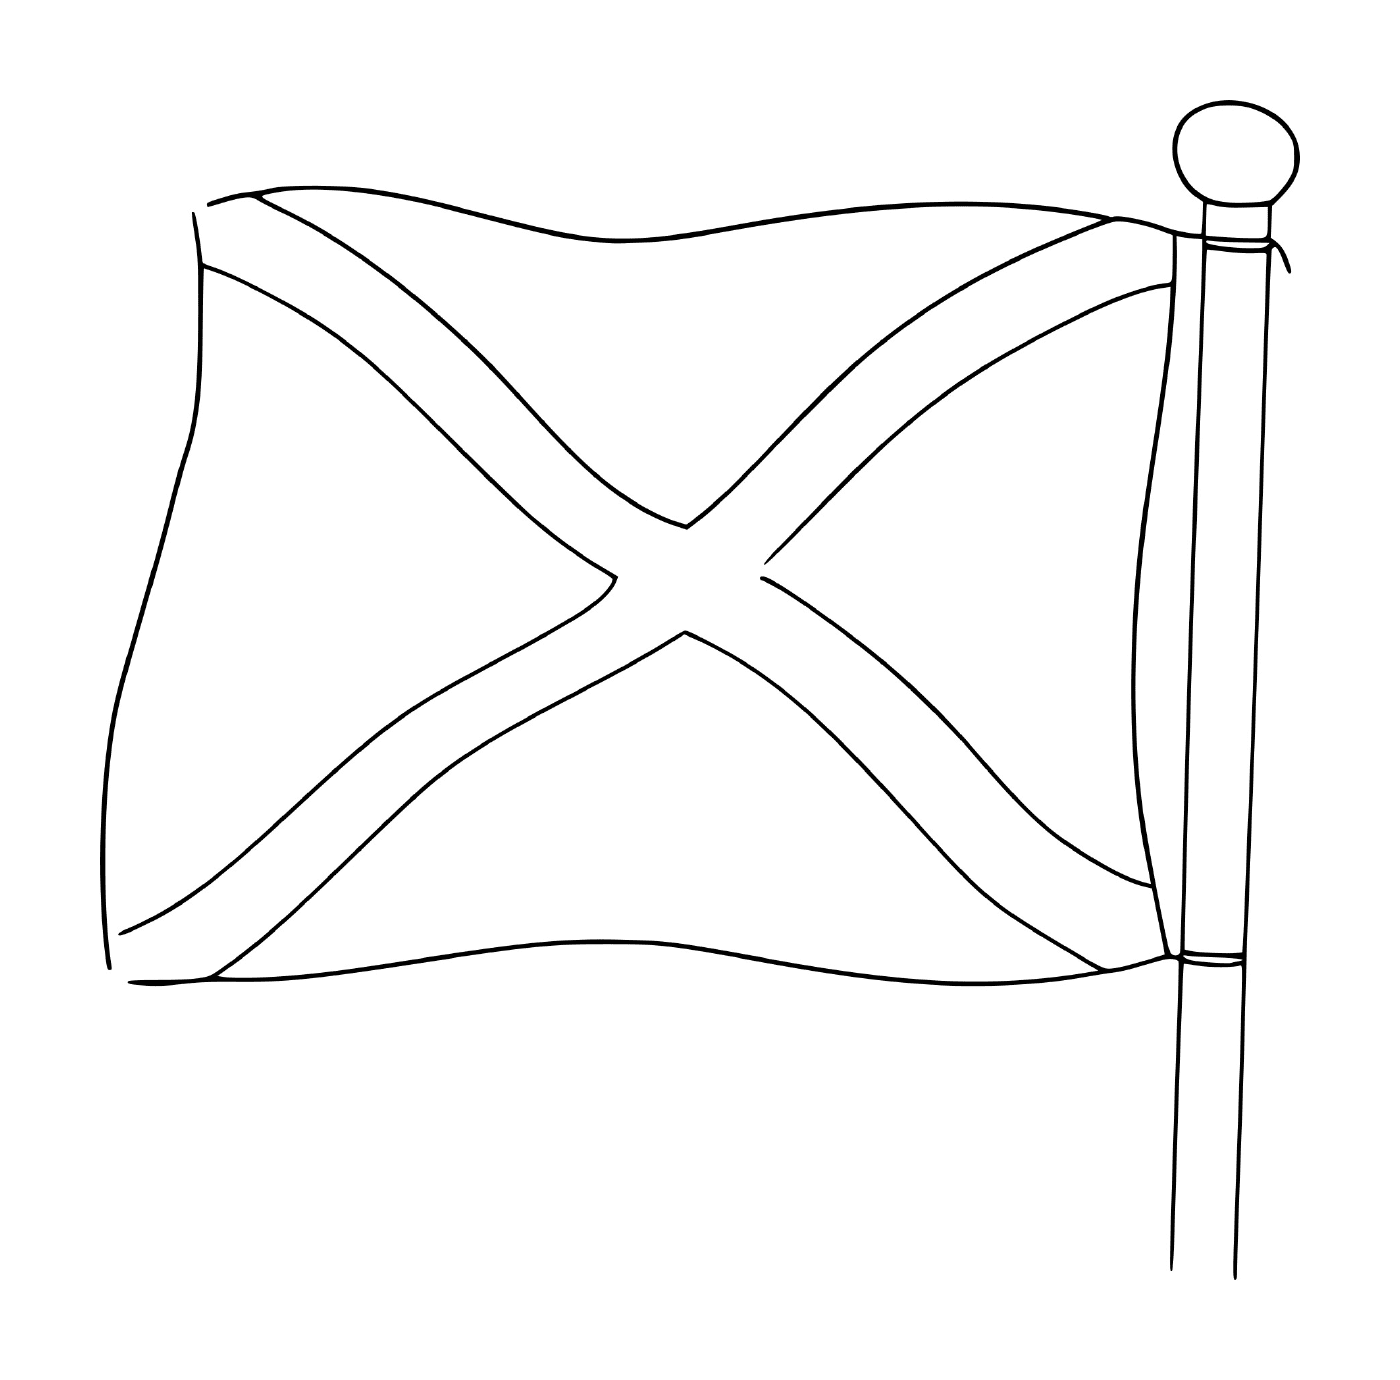  苏格兰国旗 